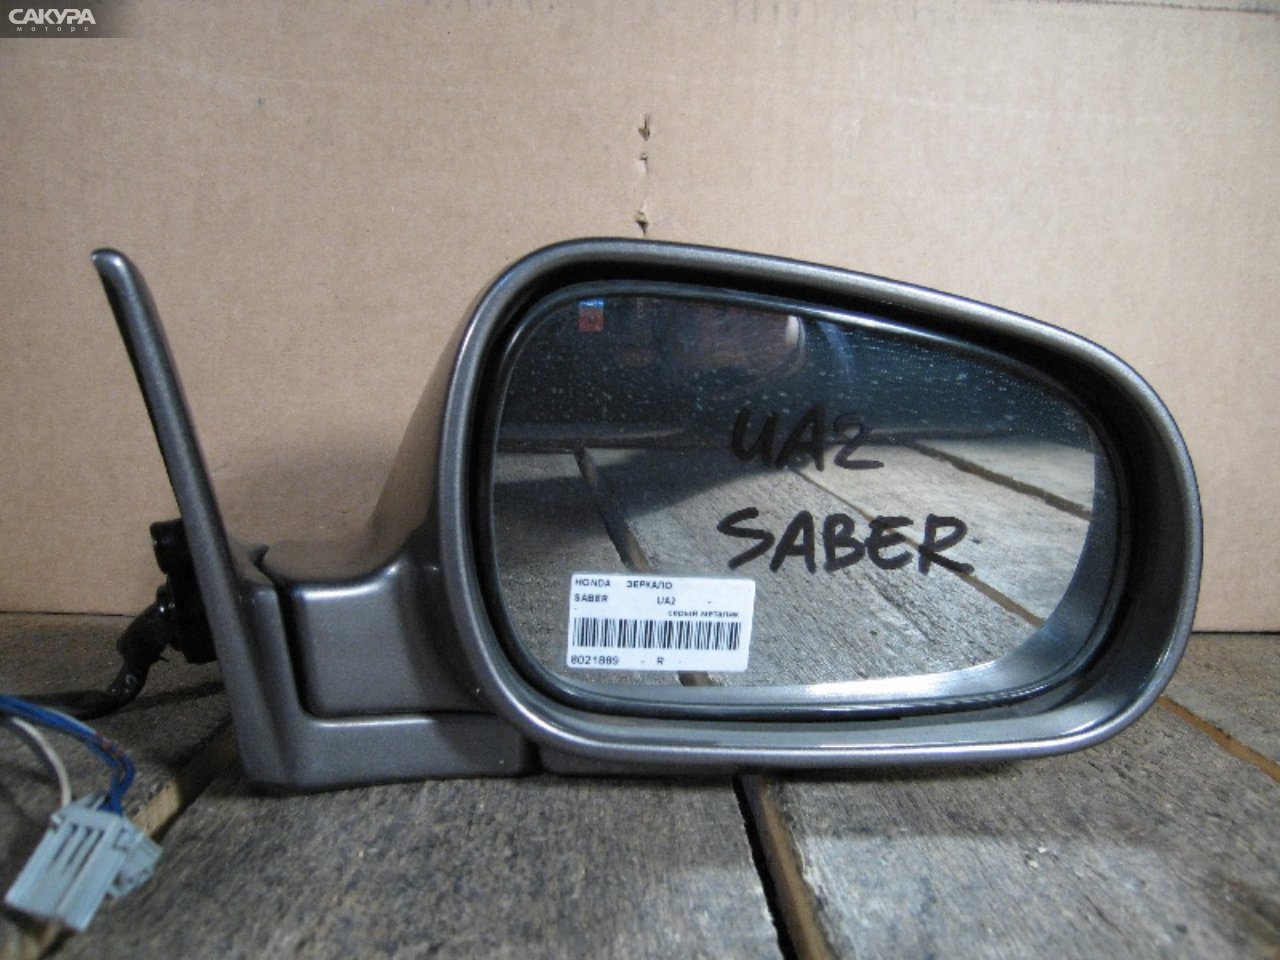 Зеркало боковое правое Honda Saber UA2: купить в Сакура Абакан.